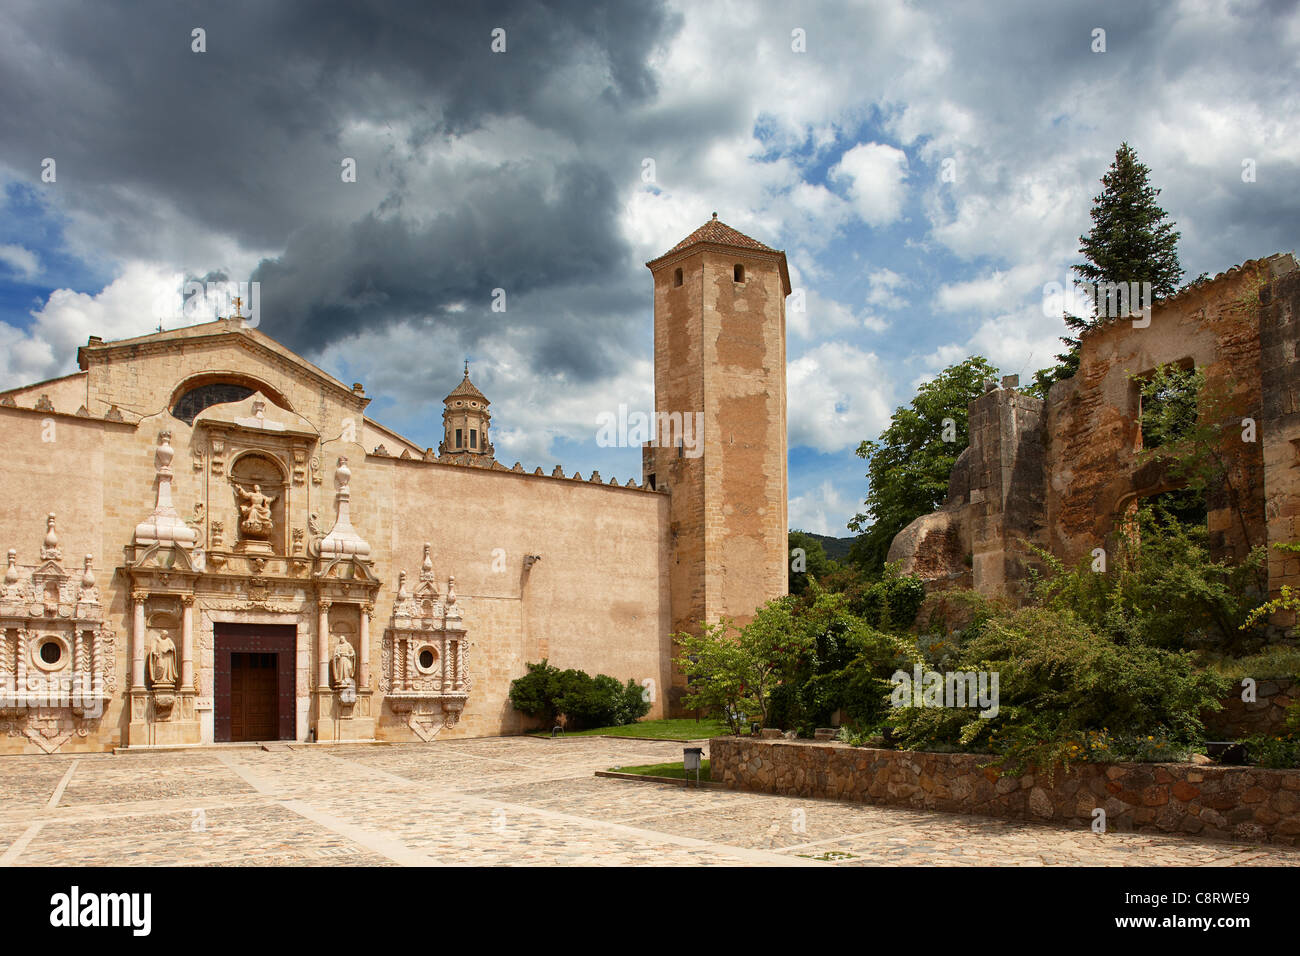 Der Königlichen Abtei von Santa Maria de Poblet. Vimbodi ich Poblet, Katalonien, Spanien. Stockfoto